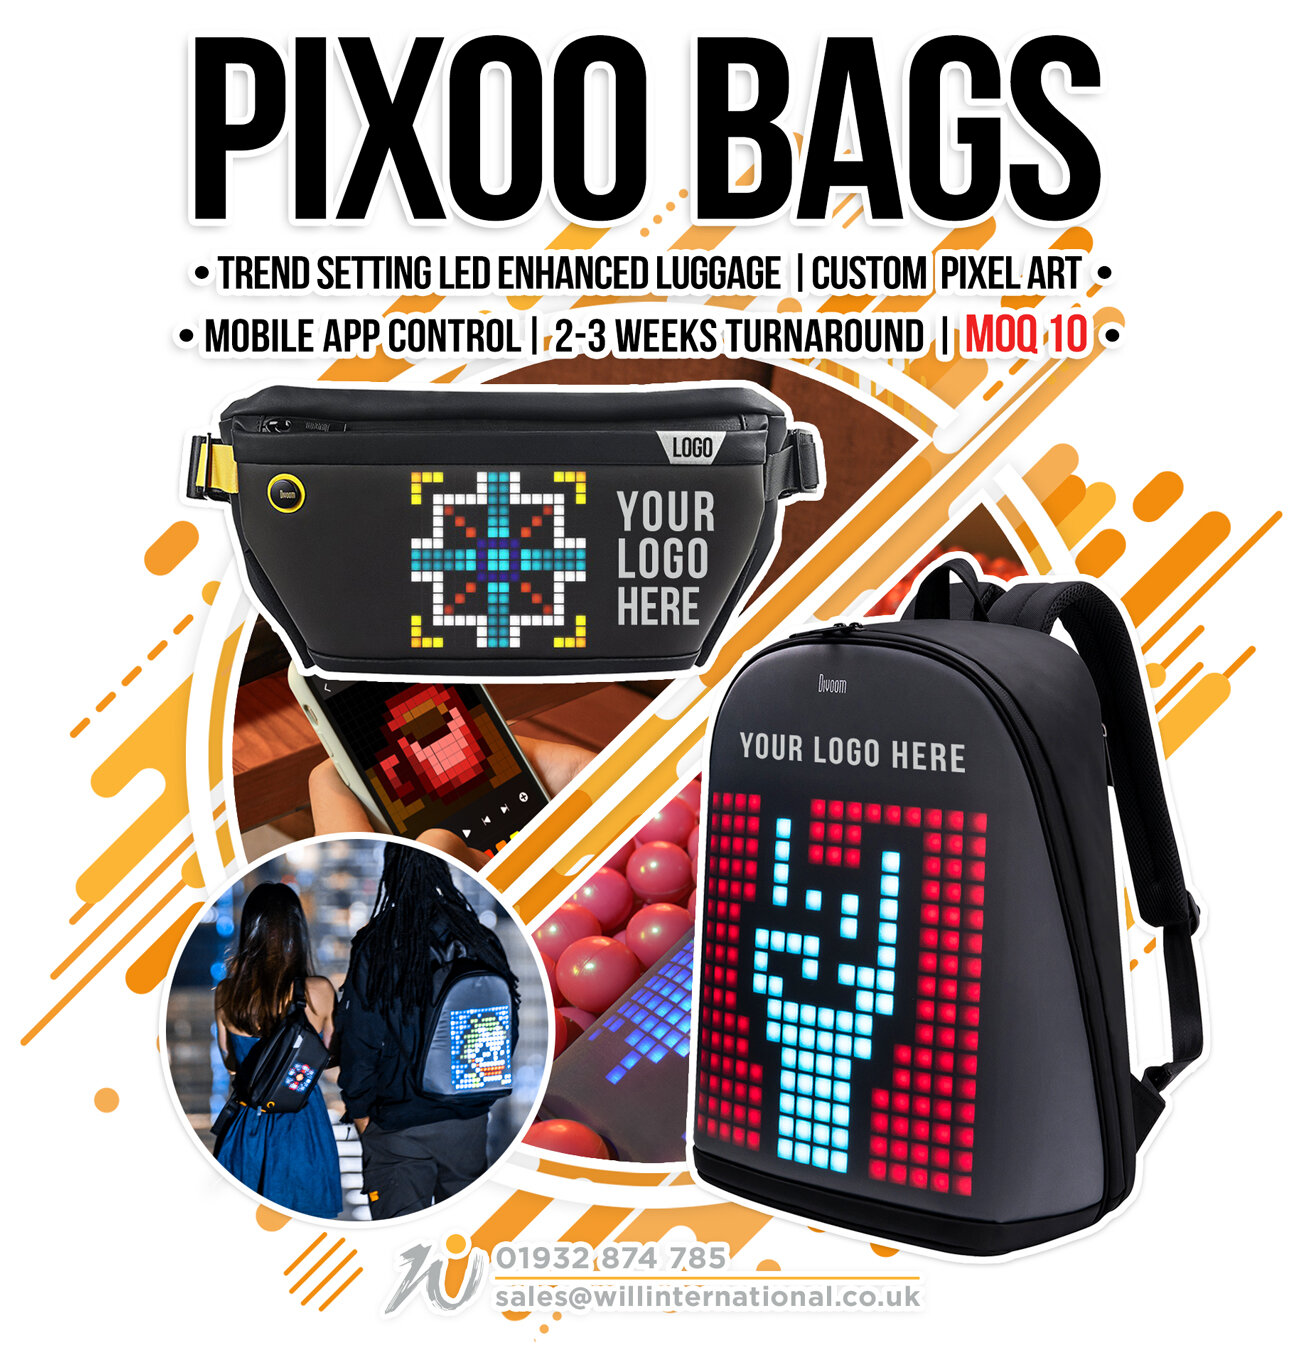 Pixoo-Bags-Emailer.jpg